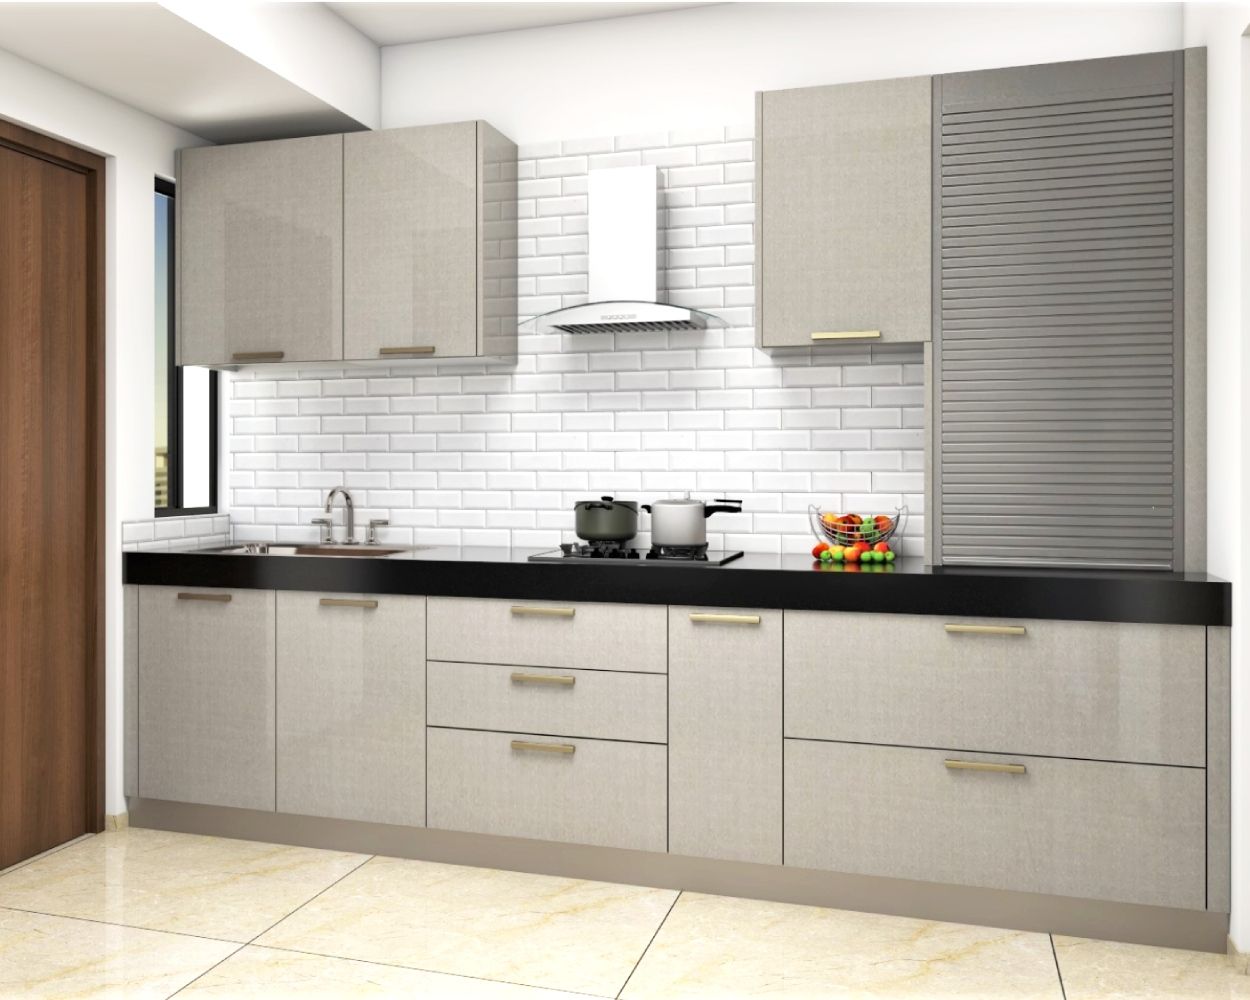 Modern Parallel Modular Kitchen Design with Ethnic Denim Splash Cabinets